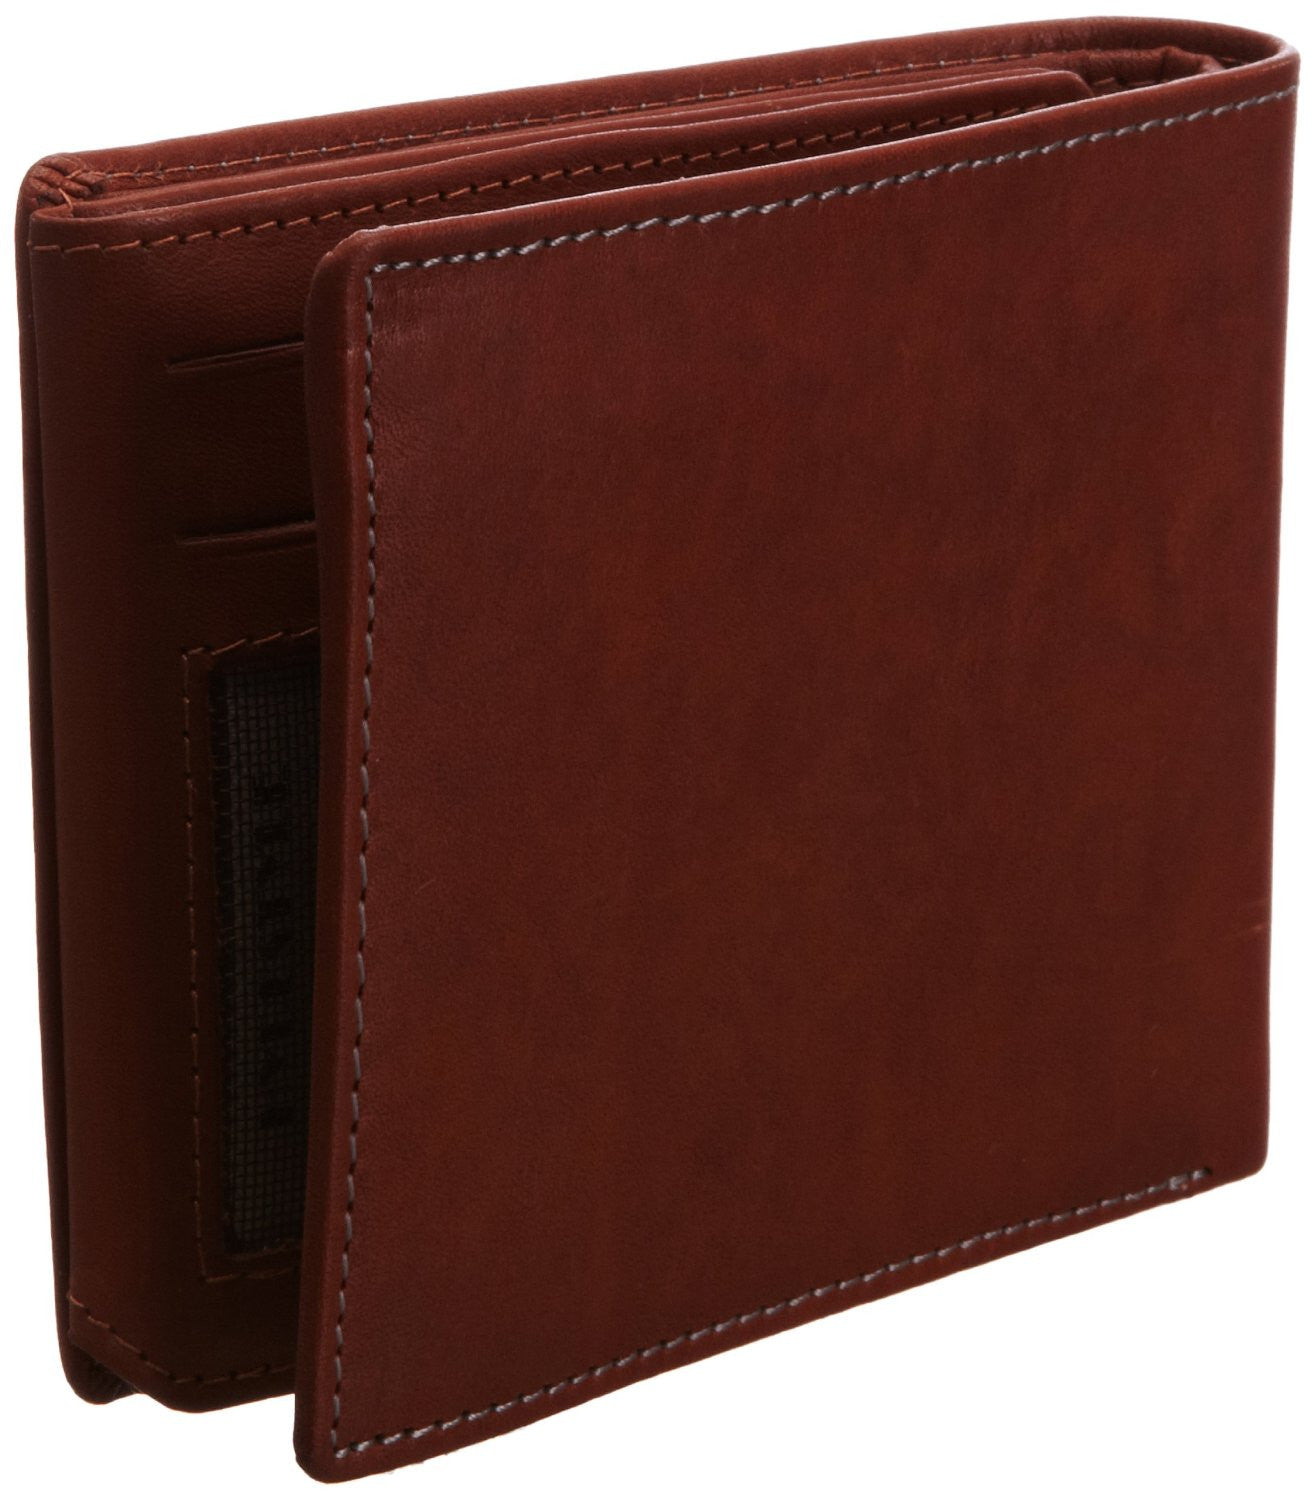 Pratico - mens 17 card leather trifold wallet #GW50 Cognac